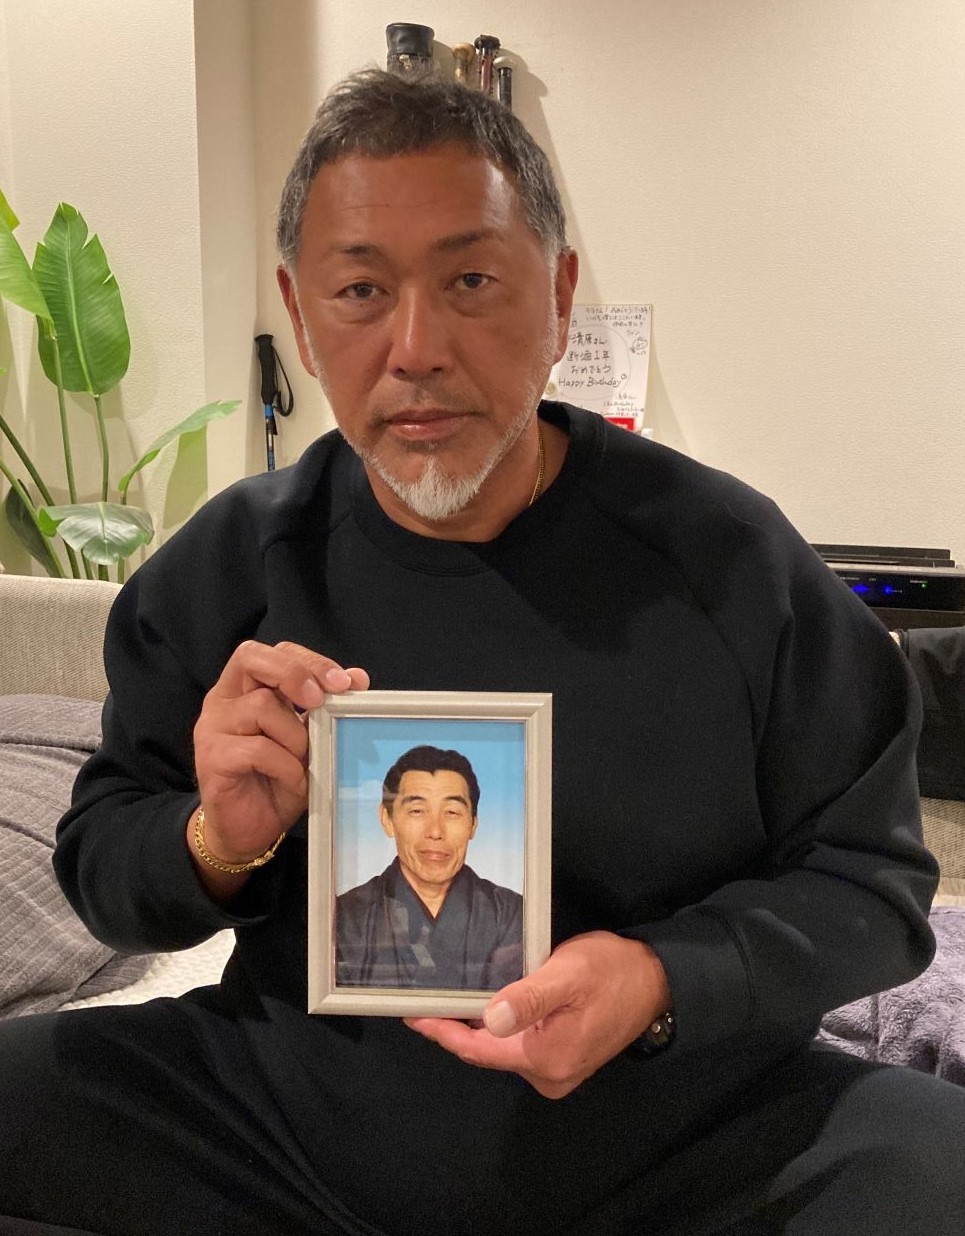 急逝した父洋文さんの写真を手にする清原和博氏。インタビューに応じ、思い出を語った